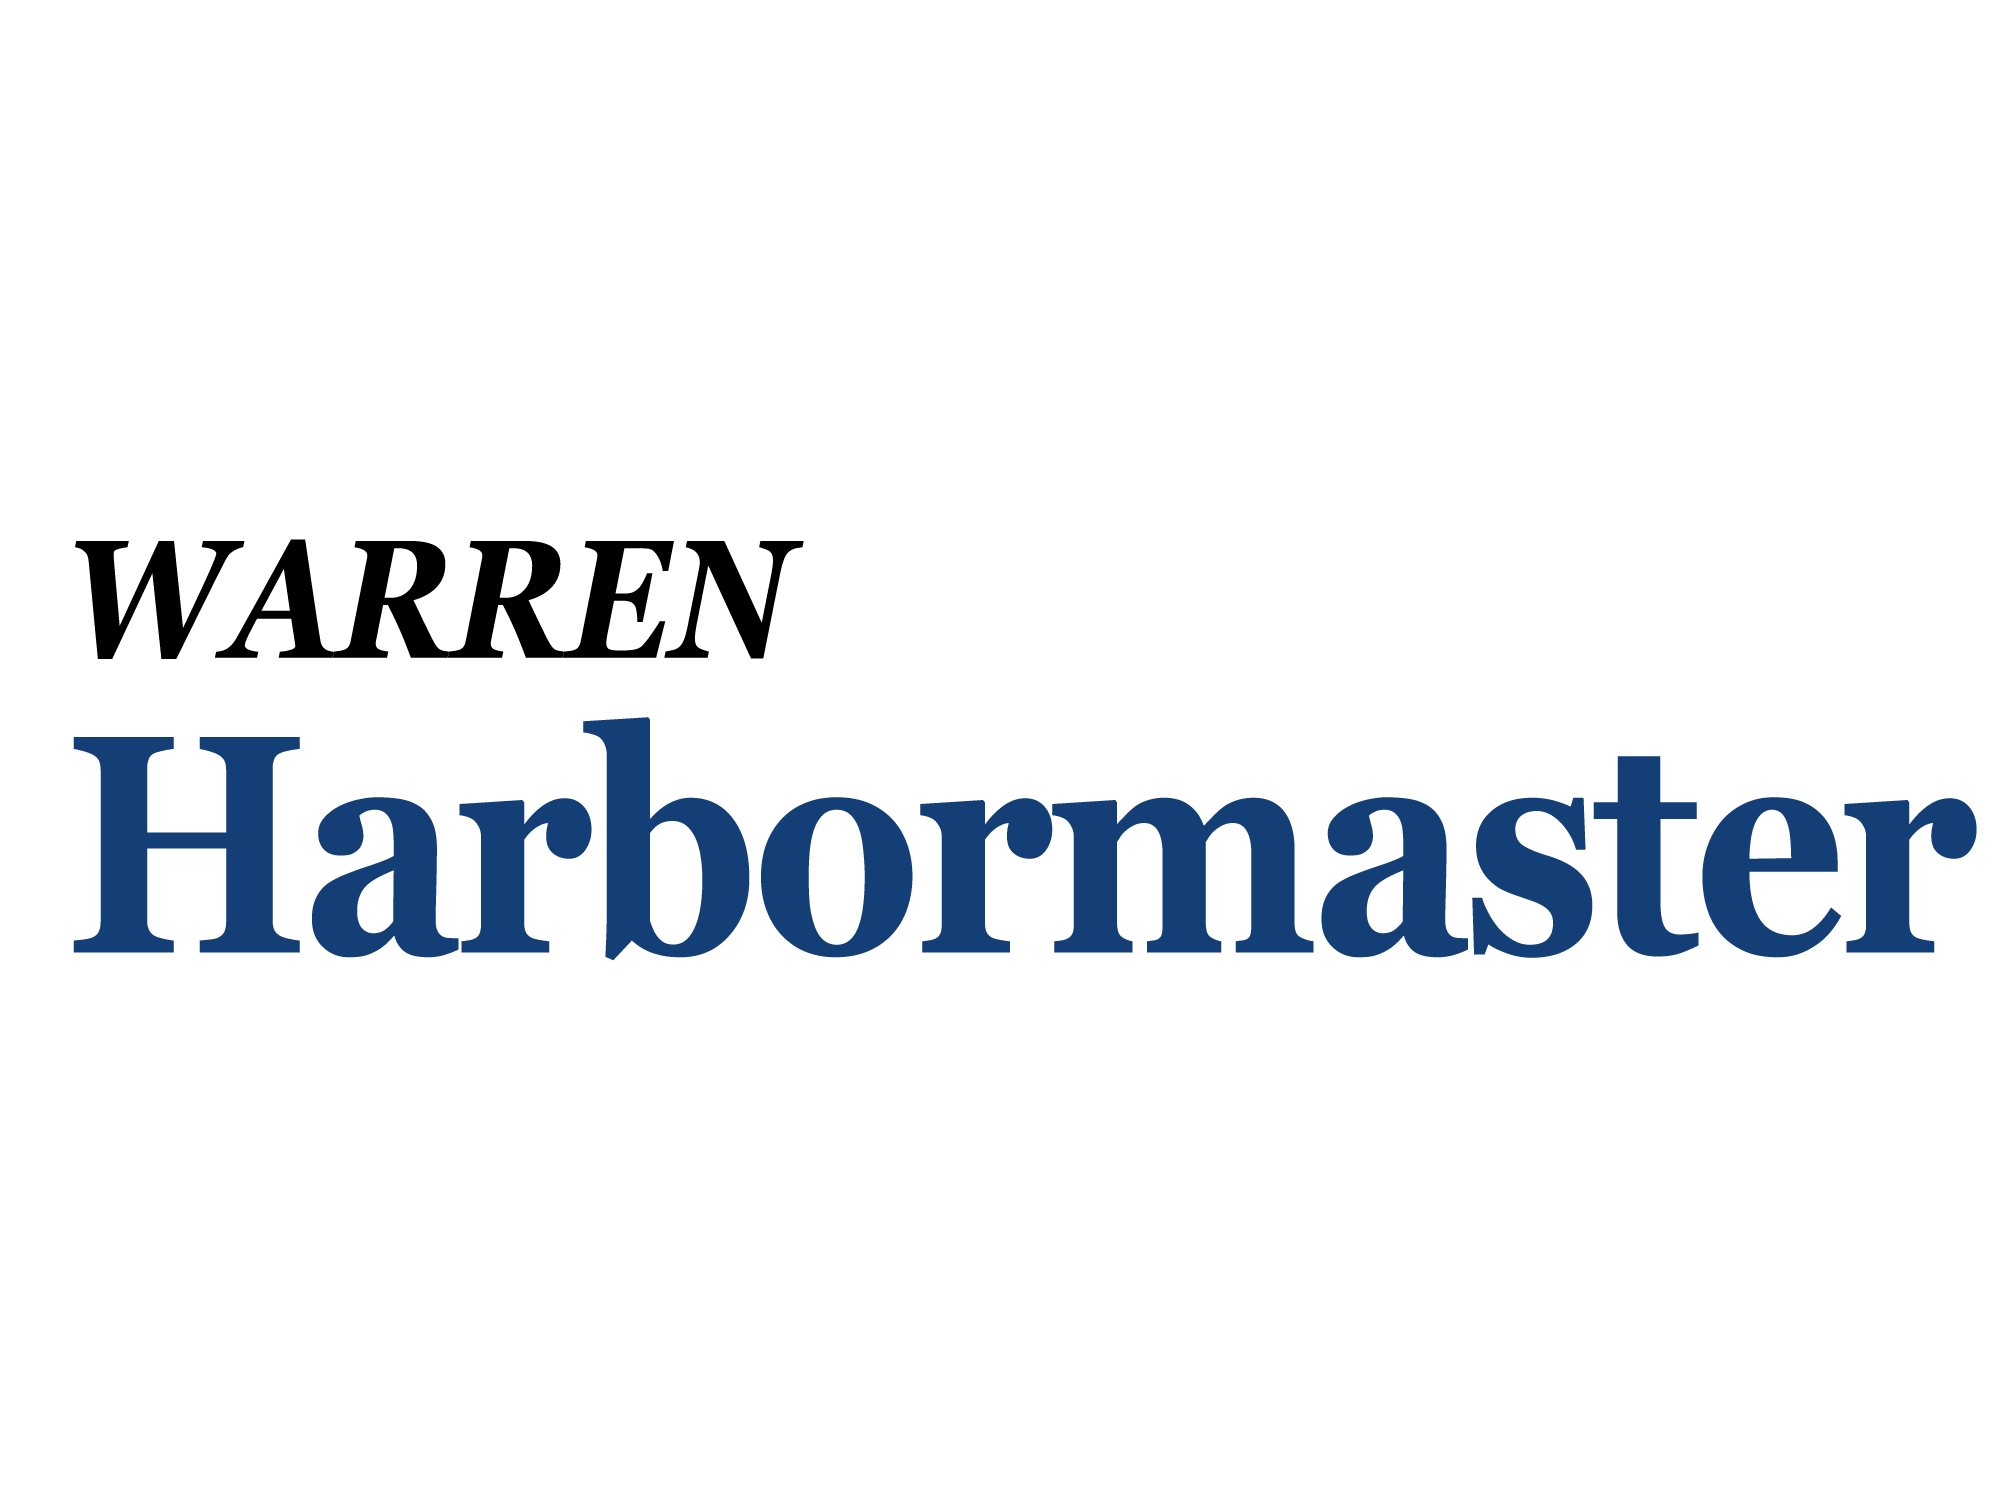 Warren Harbormaster Logo.png